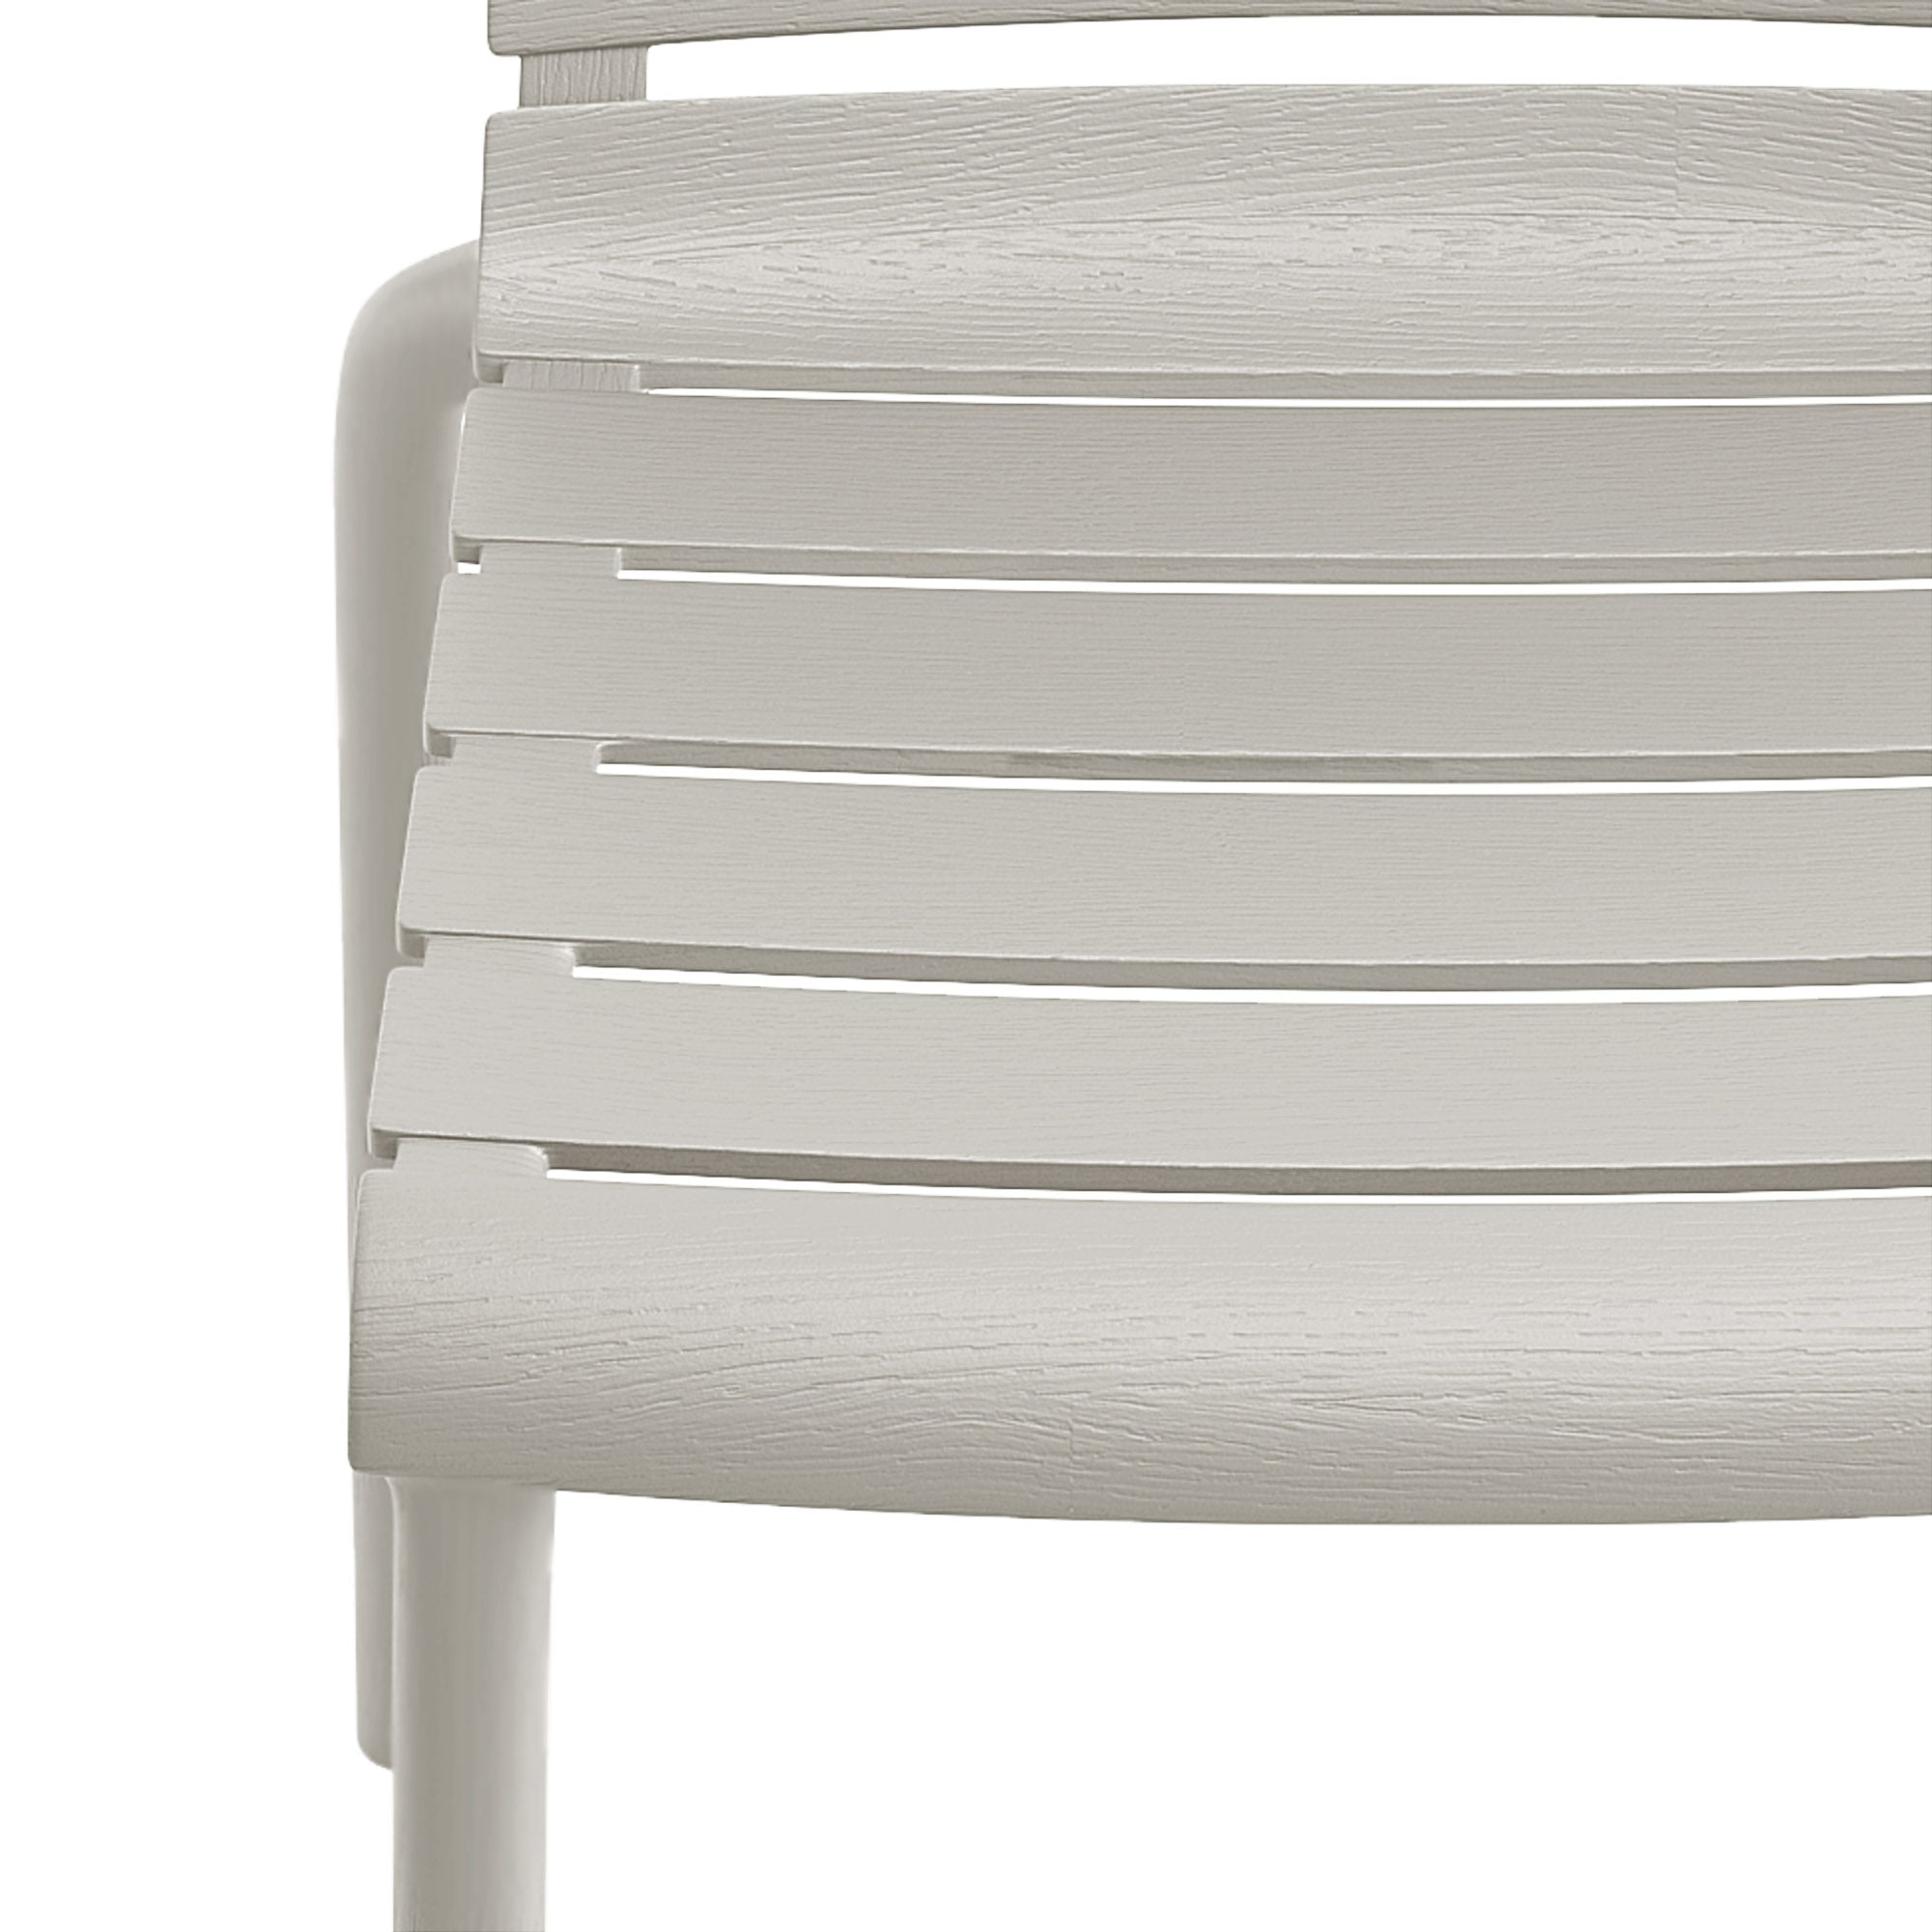 Rylan Indoor and Outdoor Stackable Chair - Cement Gray - Set of 4